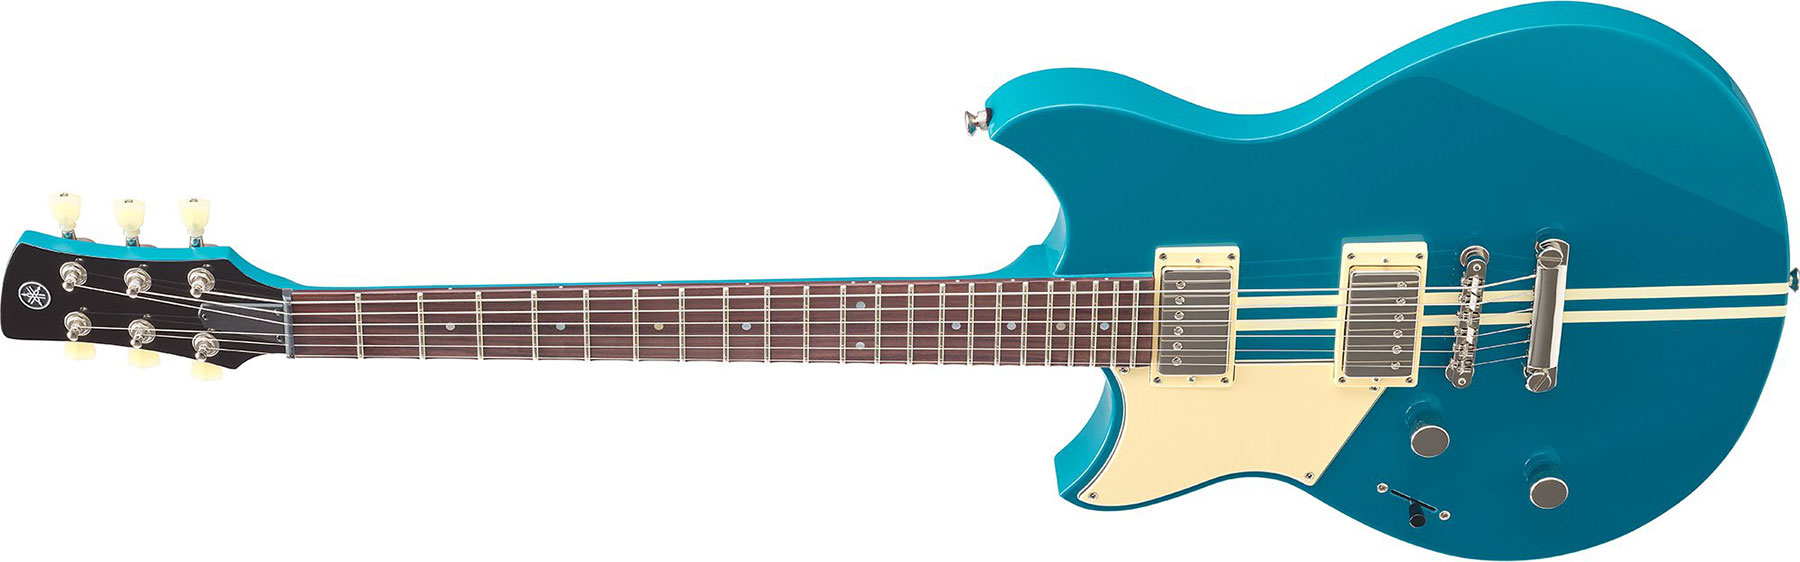 Yamaha Rse20l Revstar Element Lh Gaucher Hh Ht Rw - Swift Blue - Guitarra electrica para zurdos - Variation 1